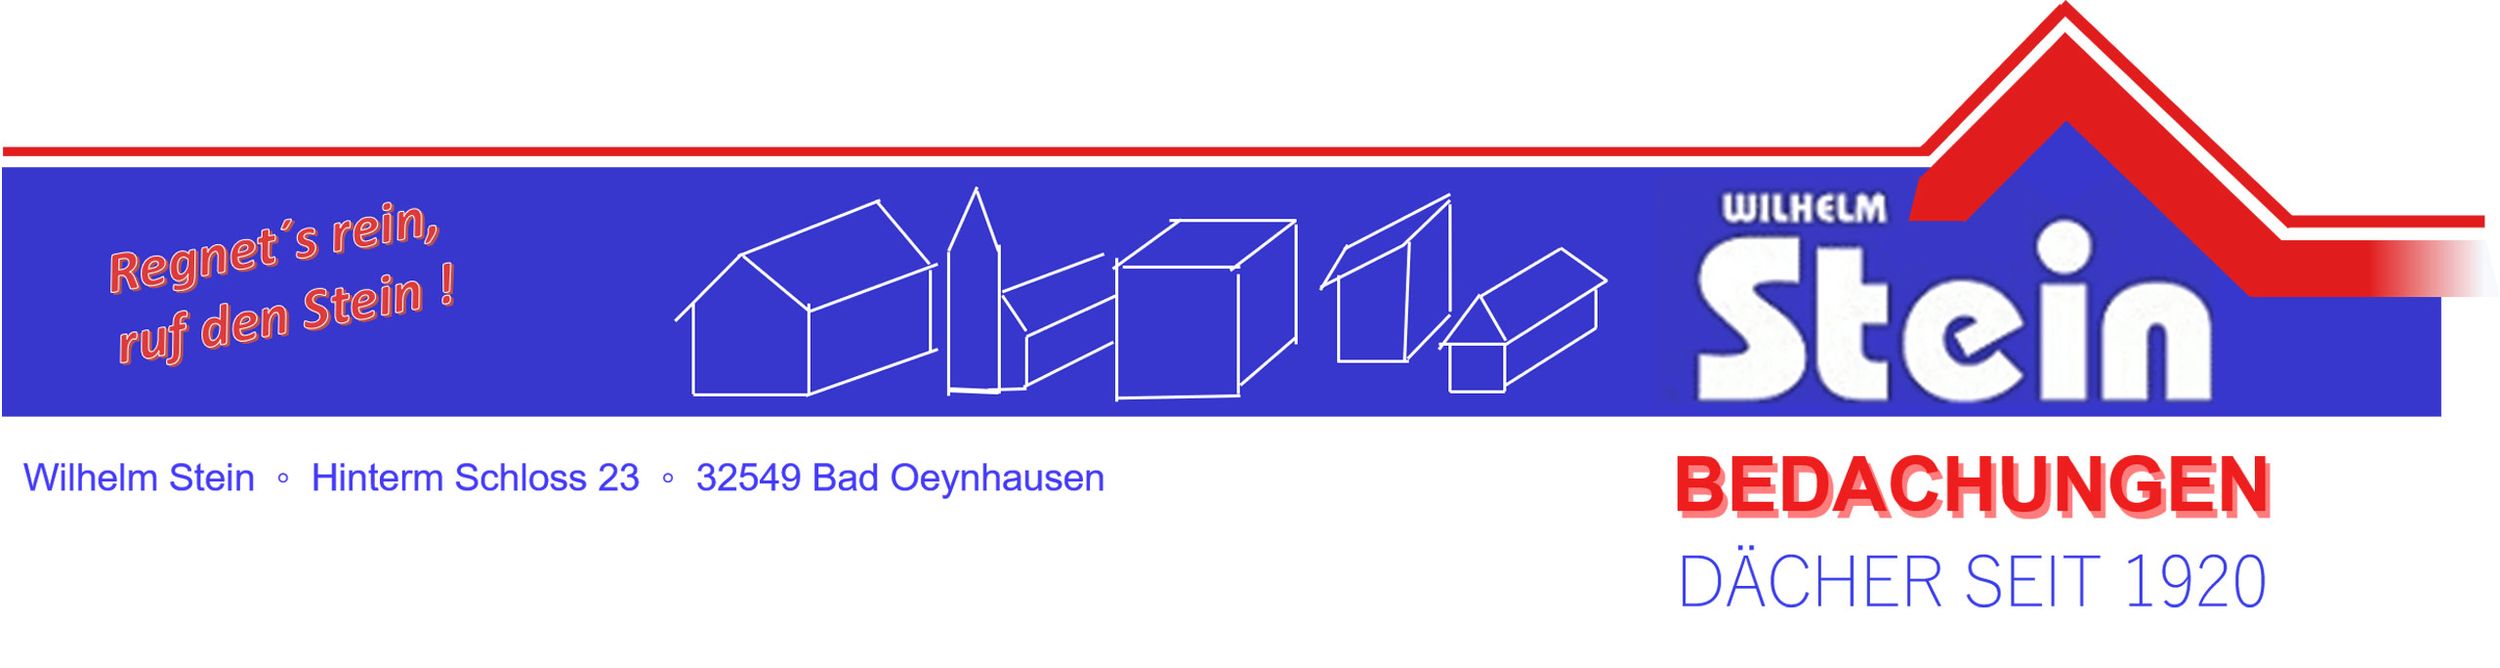 Logo - Wilhelm Stein Bedachungen GmbH